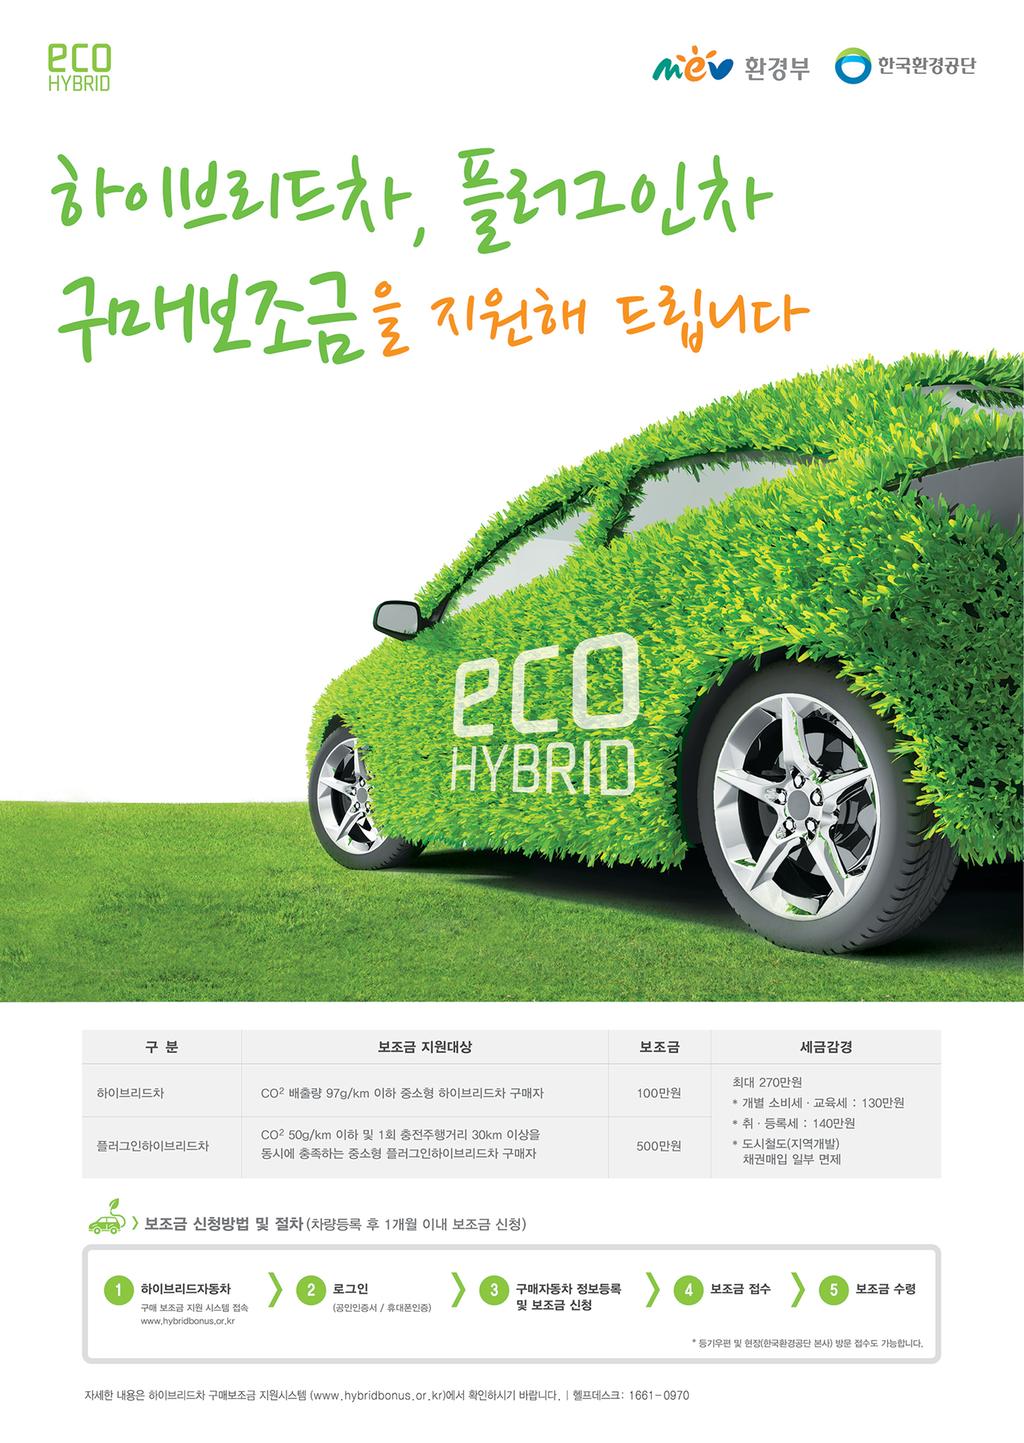 하이브리드자동차 구매보조금 지원사업 홍보 포스터